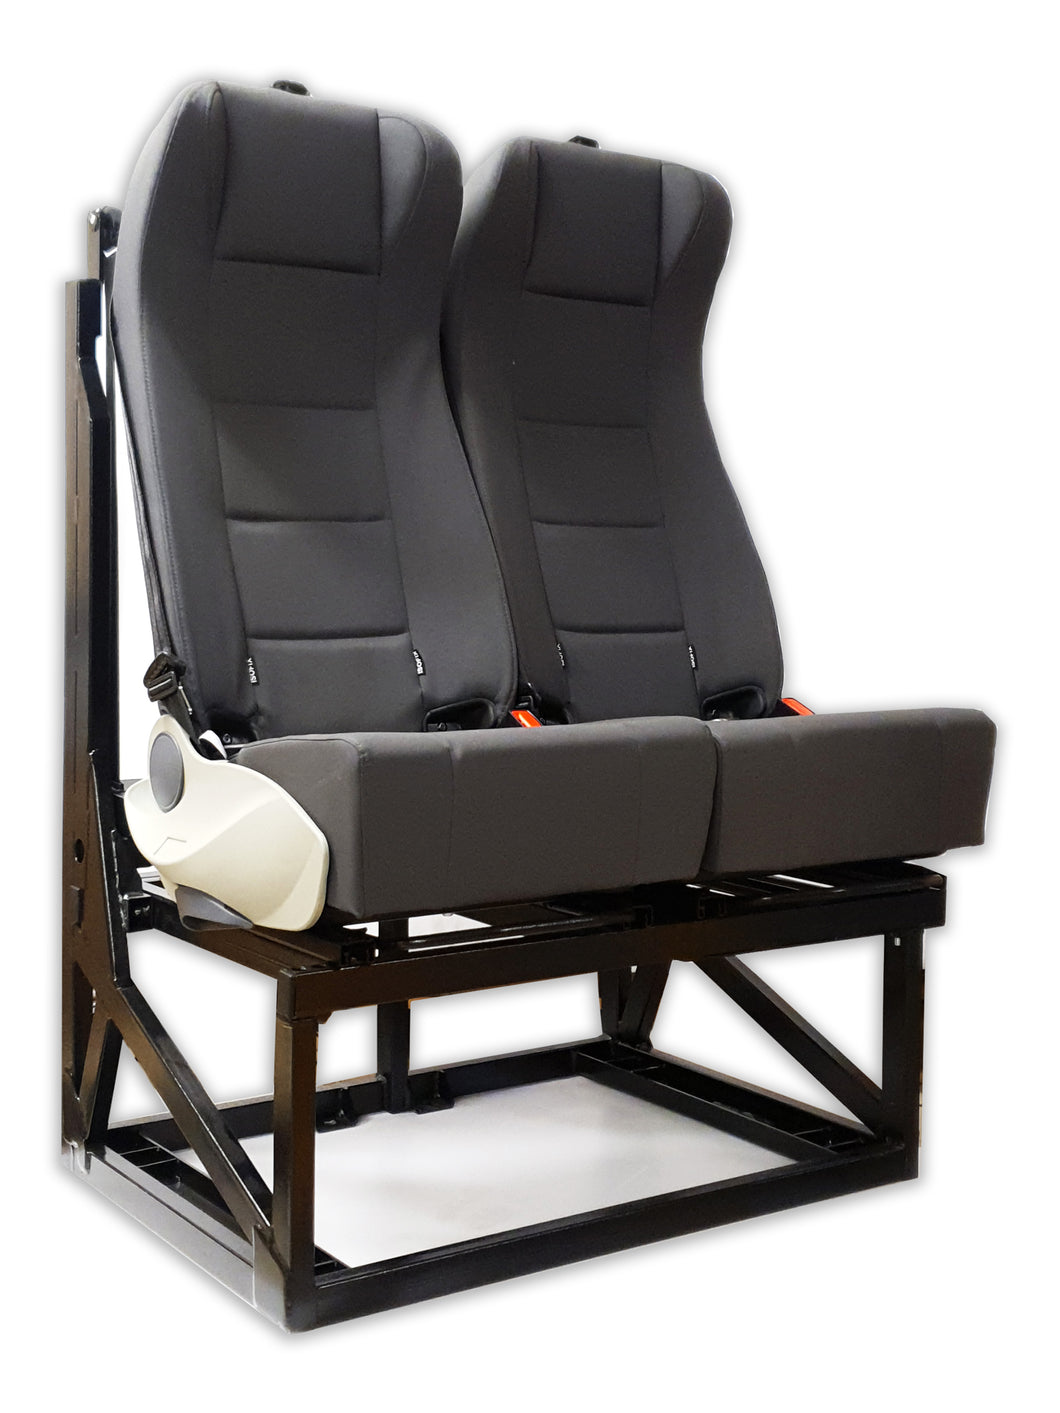 Mobiframe - RAM02 - Rear Bench Seat